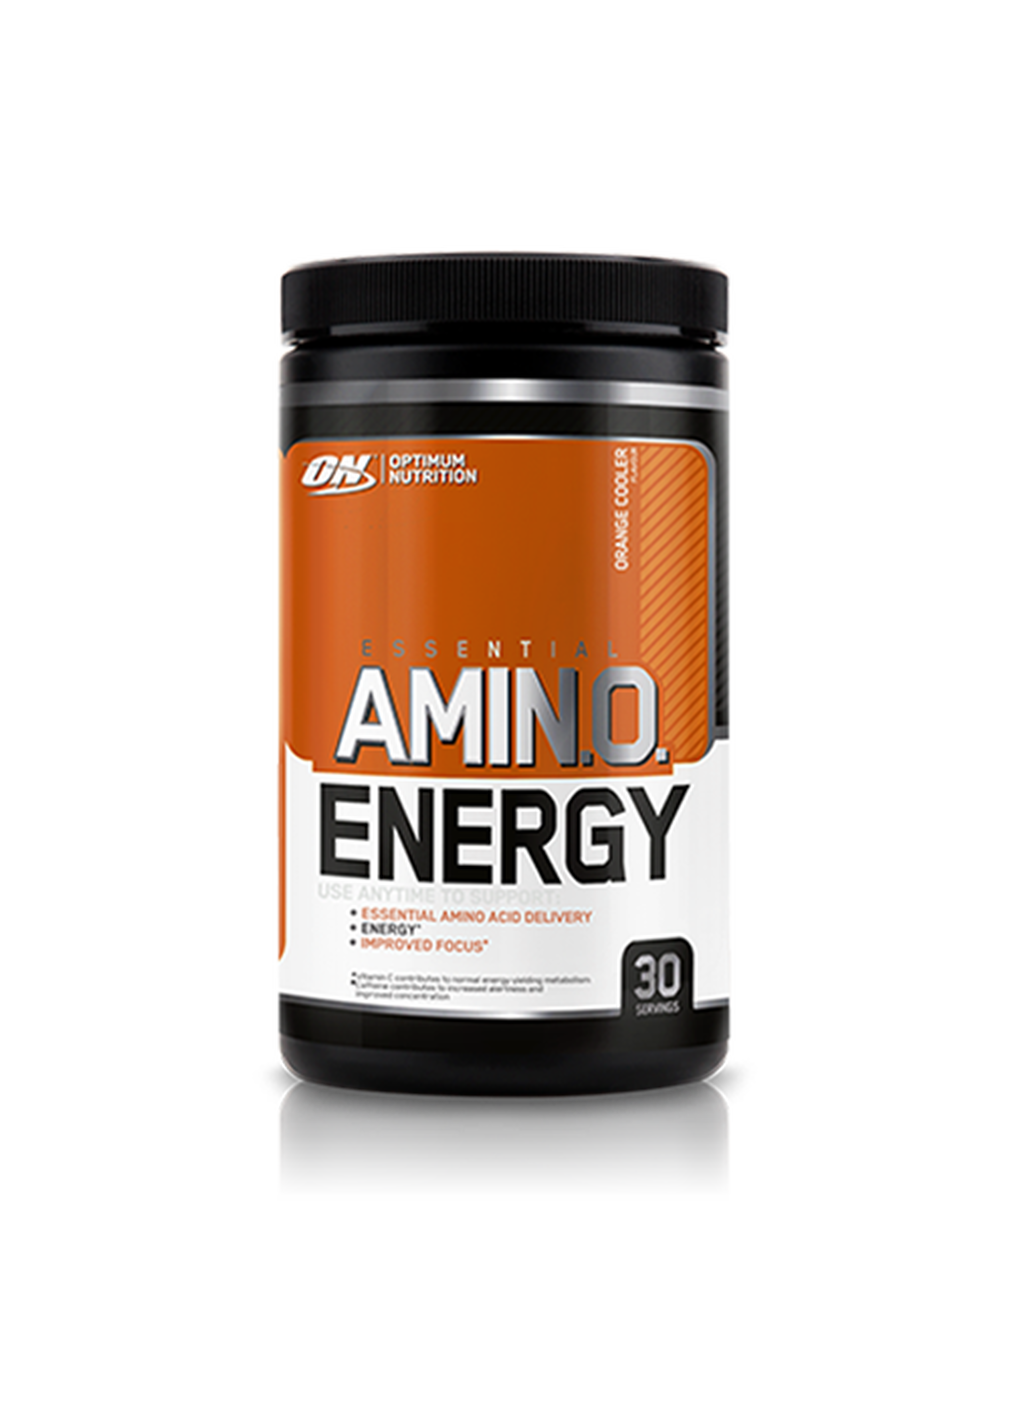 Optimum Nutrition Amino Energy Orange Cooler 270g